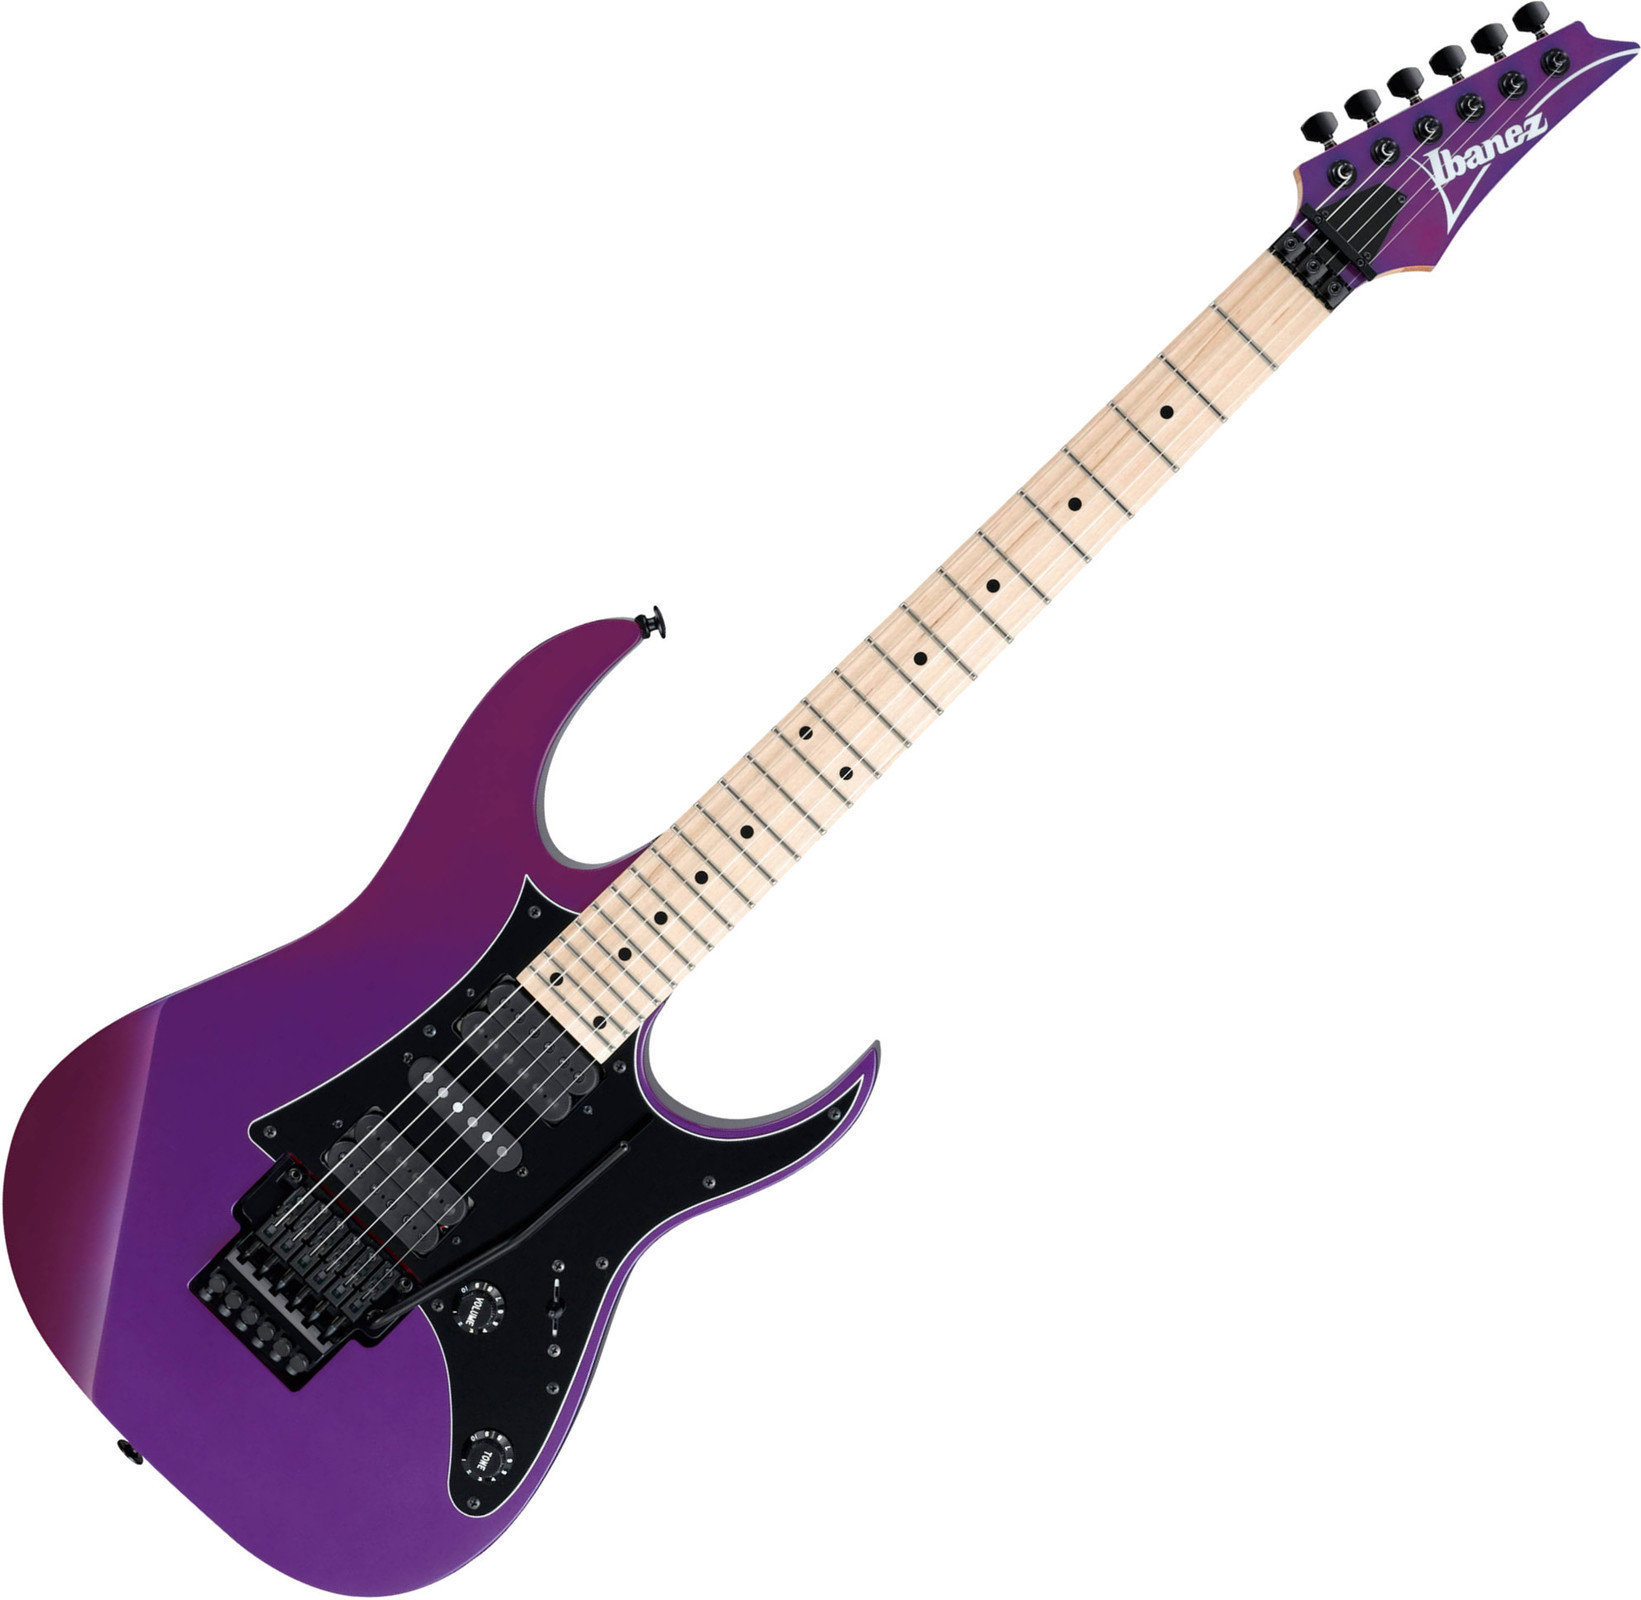 Ηλεκτρική Κιθάρα Ibanez RG550-PN Purple Neon